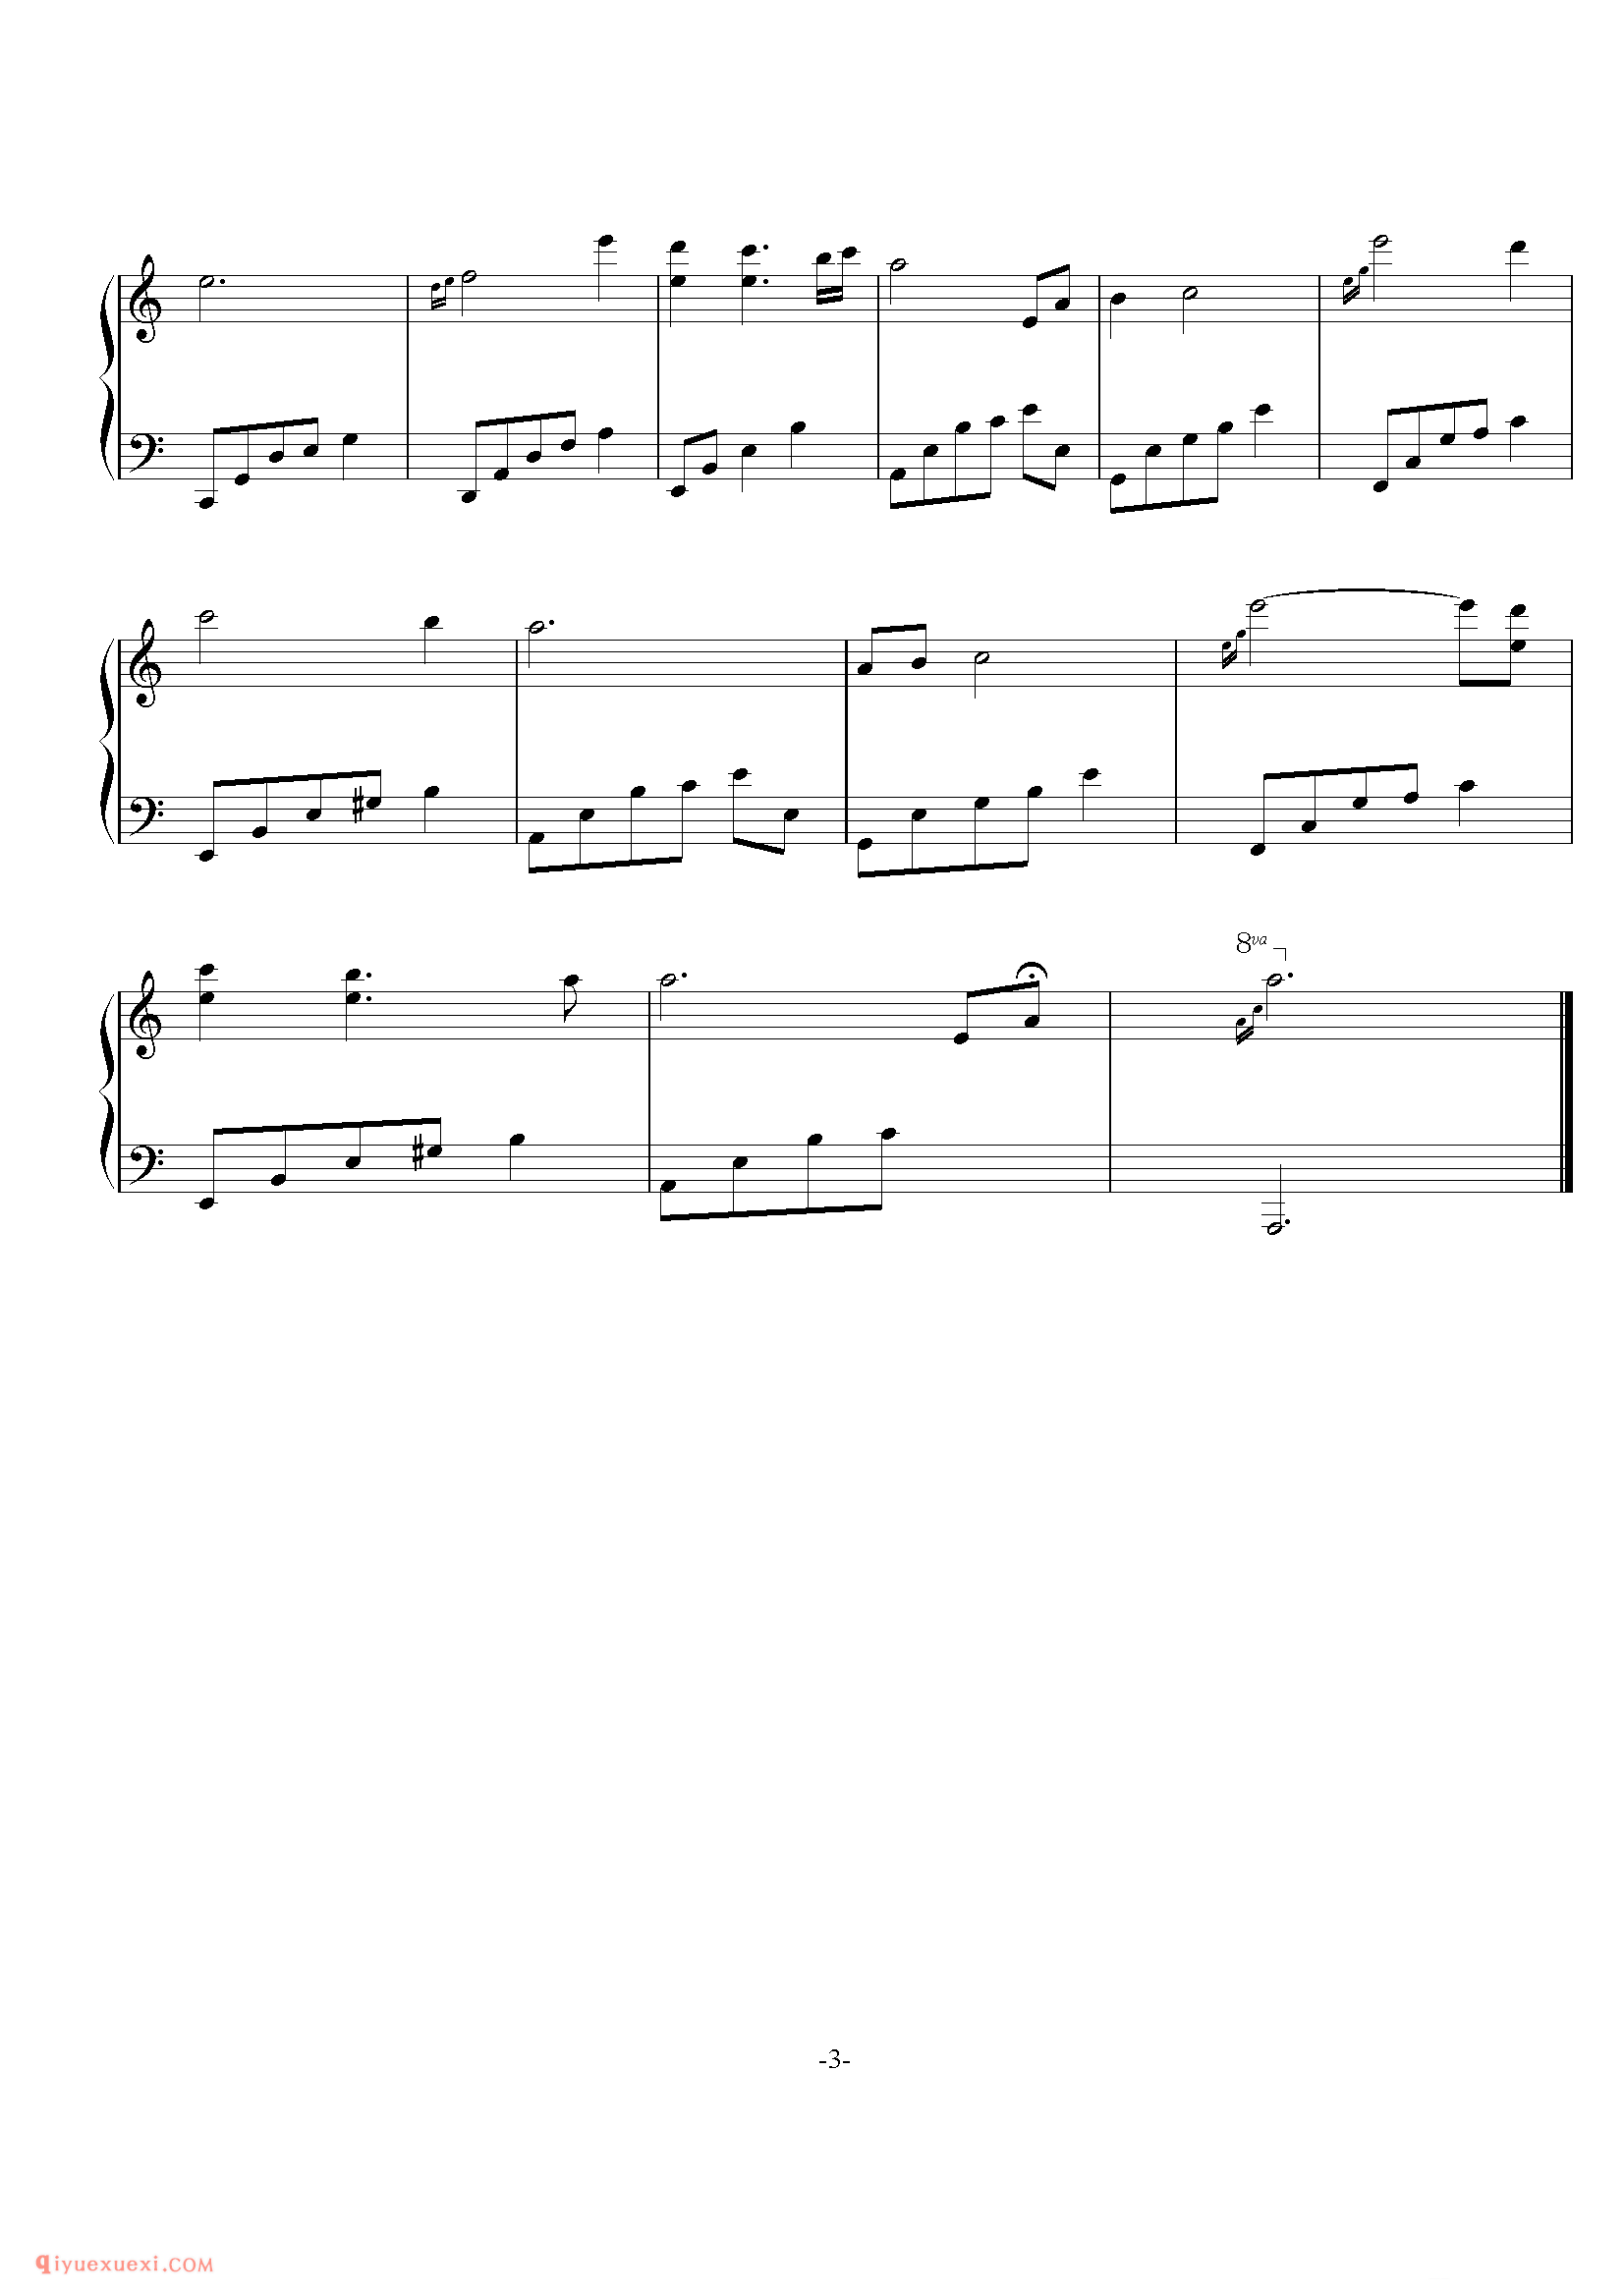 石进《夜的钢琴曲》第20首_石进夜的钢琴曲(20)五线谱